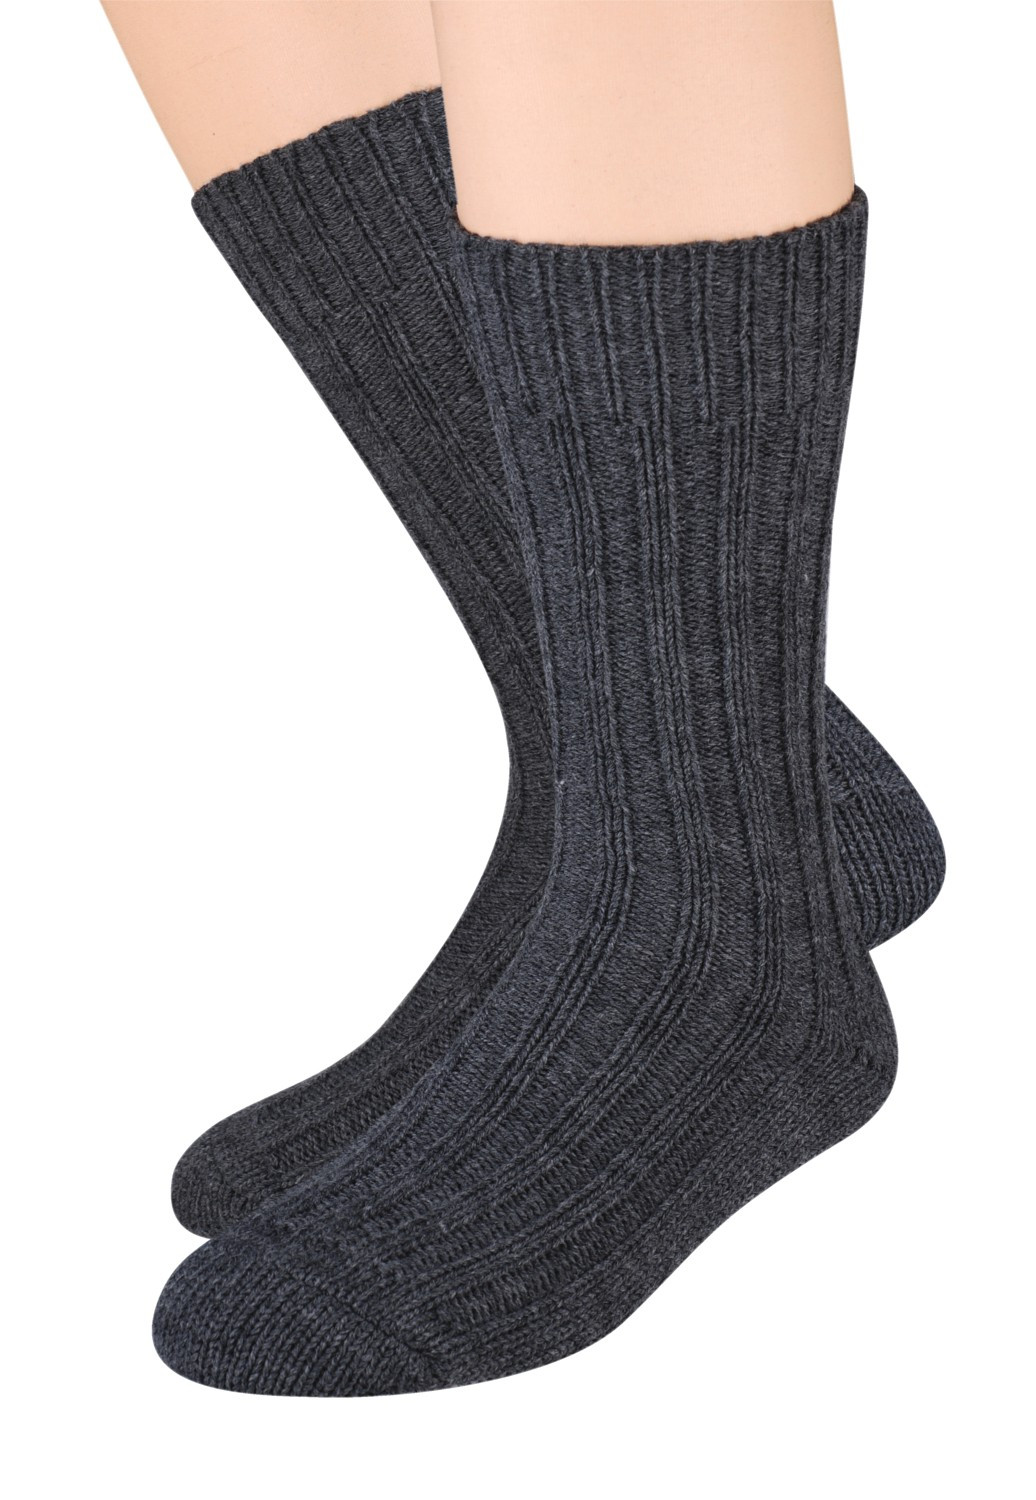 Pánské vlněné ponožky Steven art.085 41-46 černá 38-40